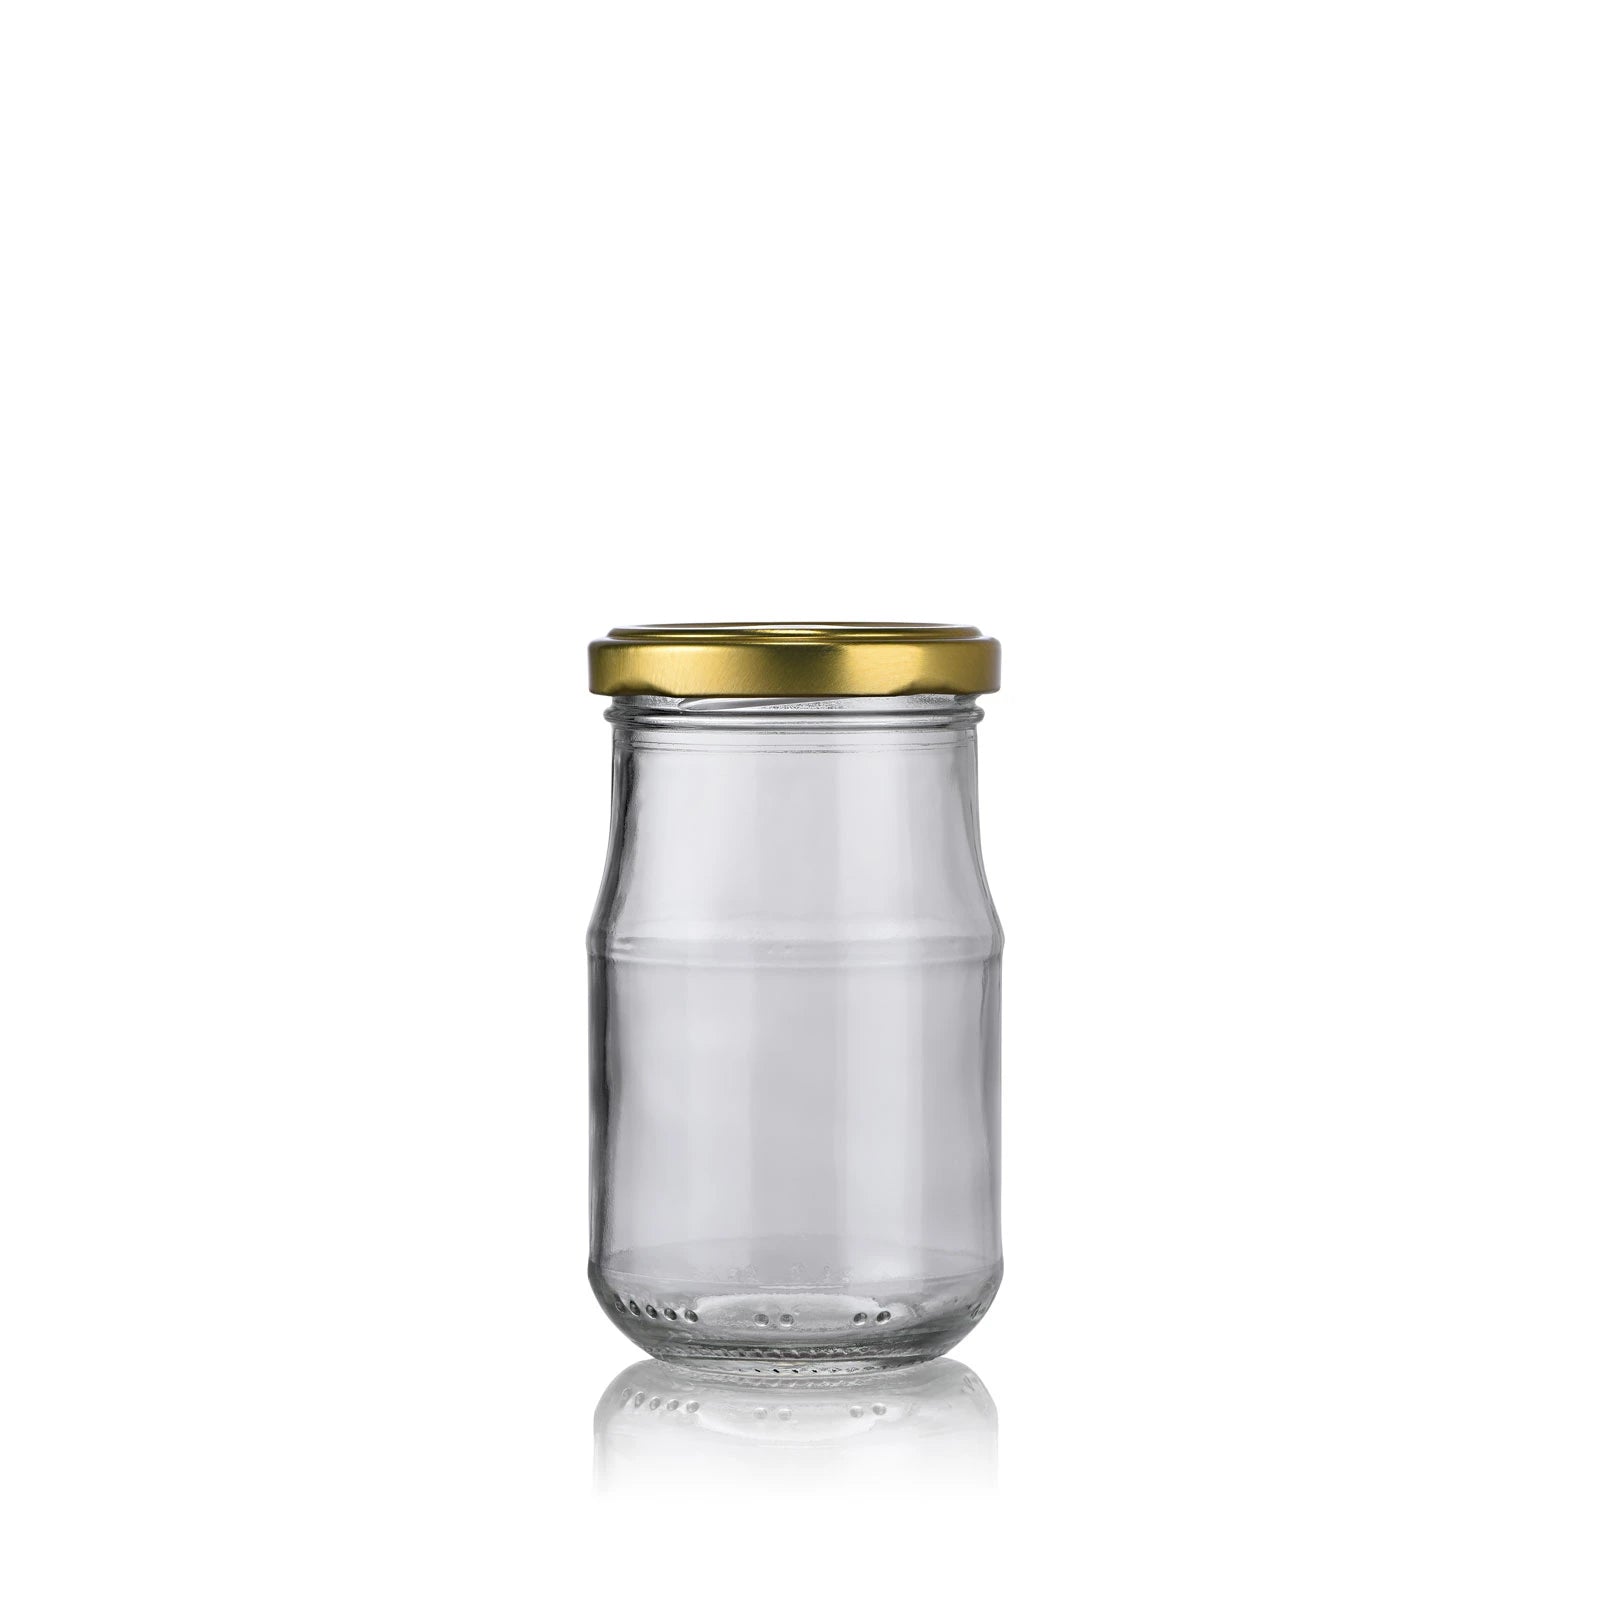 Pot de sauce en verre 212 ml avec couvercle or